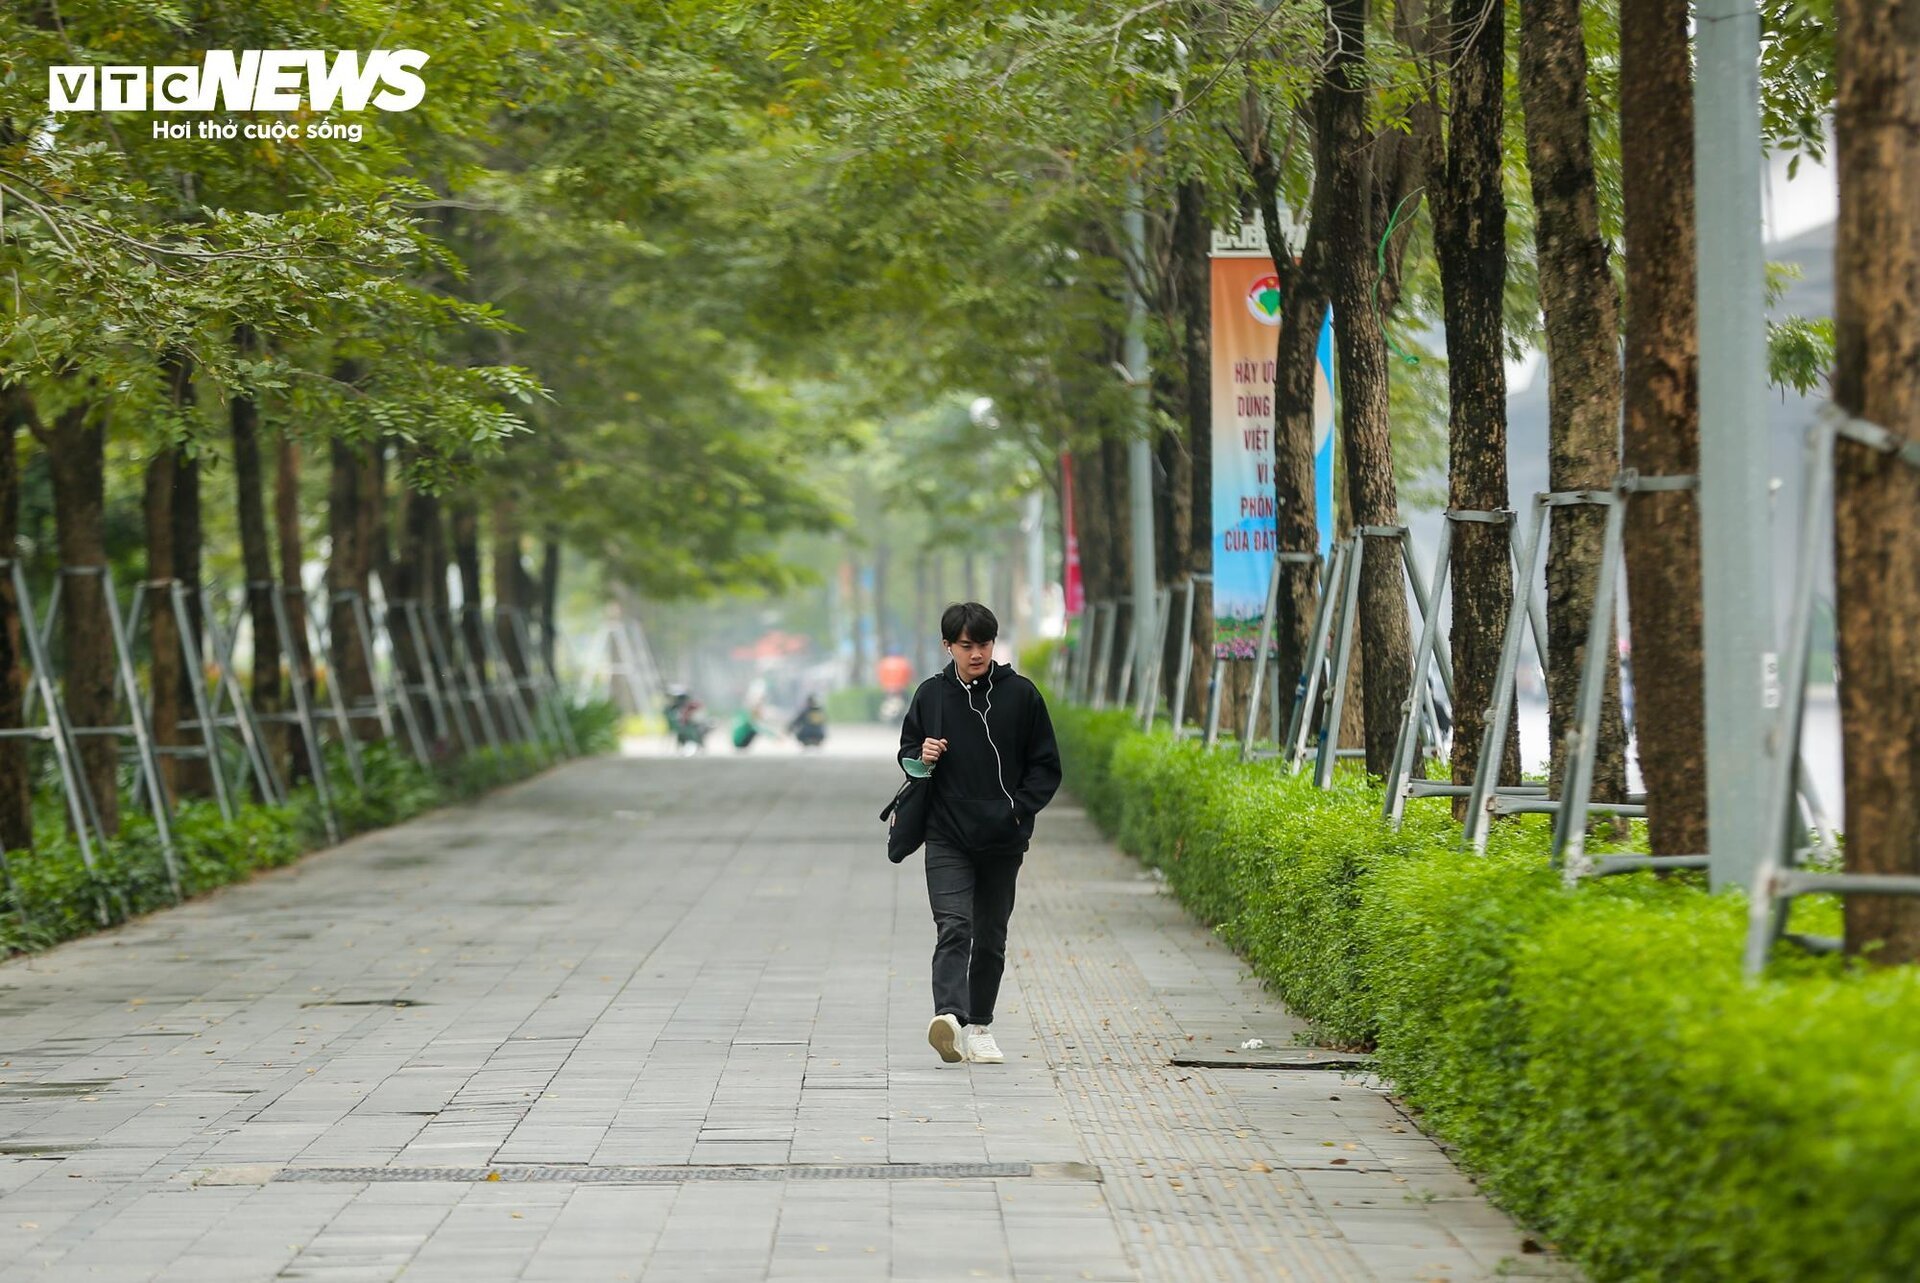 Cận cảnh 2 tuyến đường ở Hà Nội đề xuất thiết kế làn đường dành riêng cho xe đạp - Ảnh 4